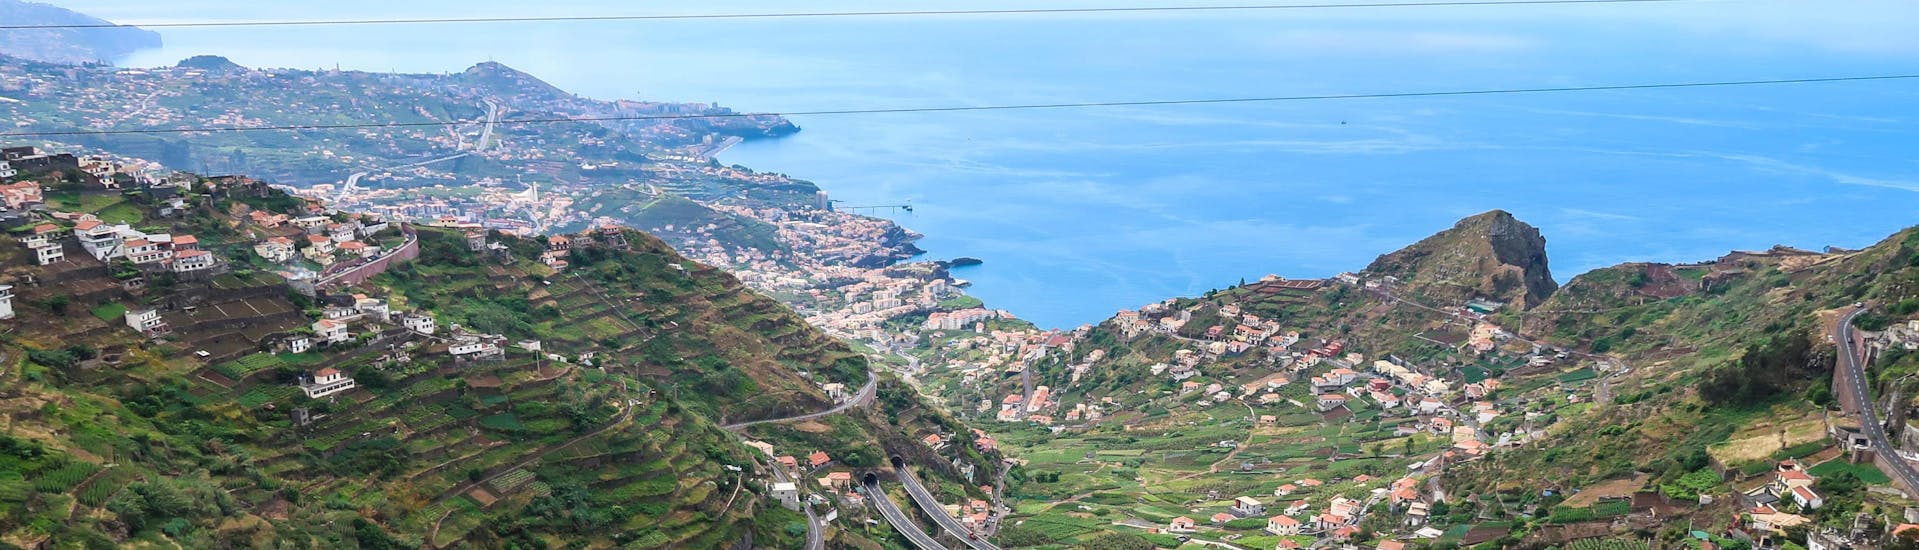 Madeira: Een tandemvlucht vindt plaats in een van de hotspots voor paragliding.